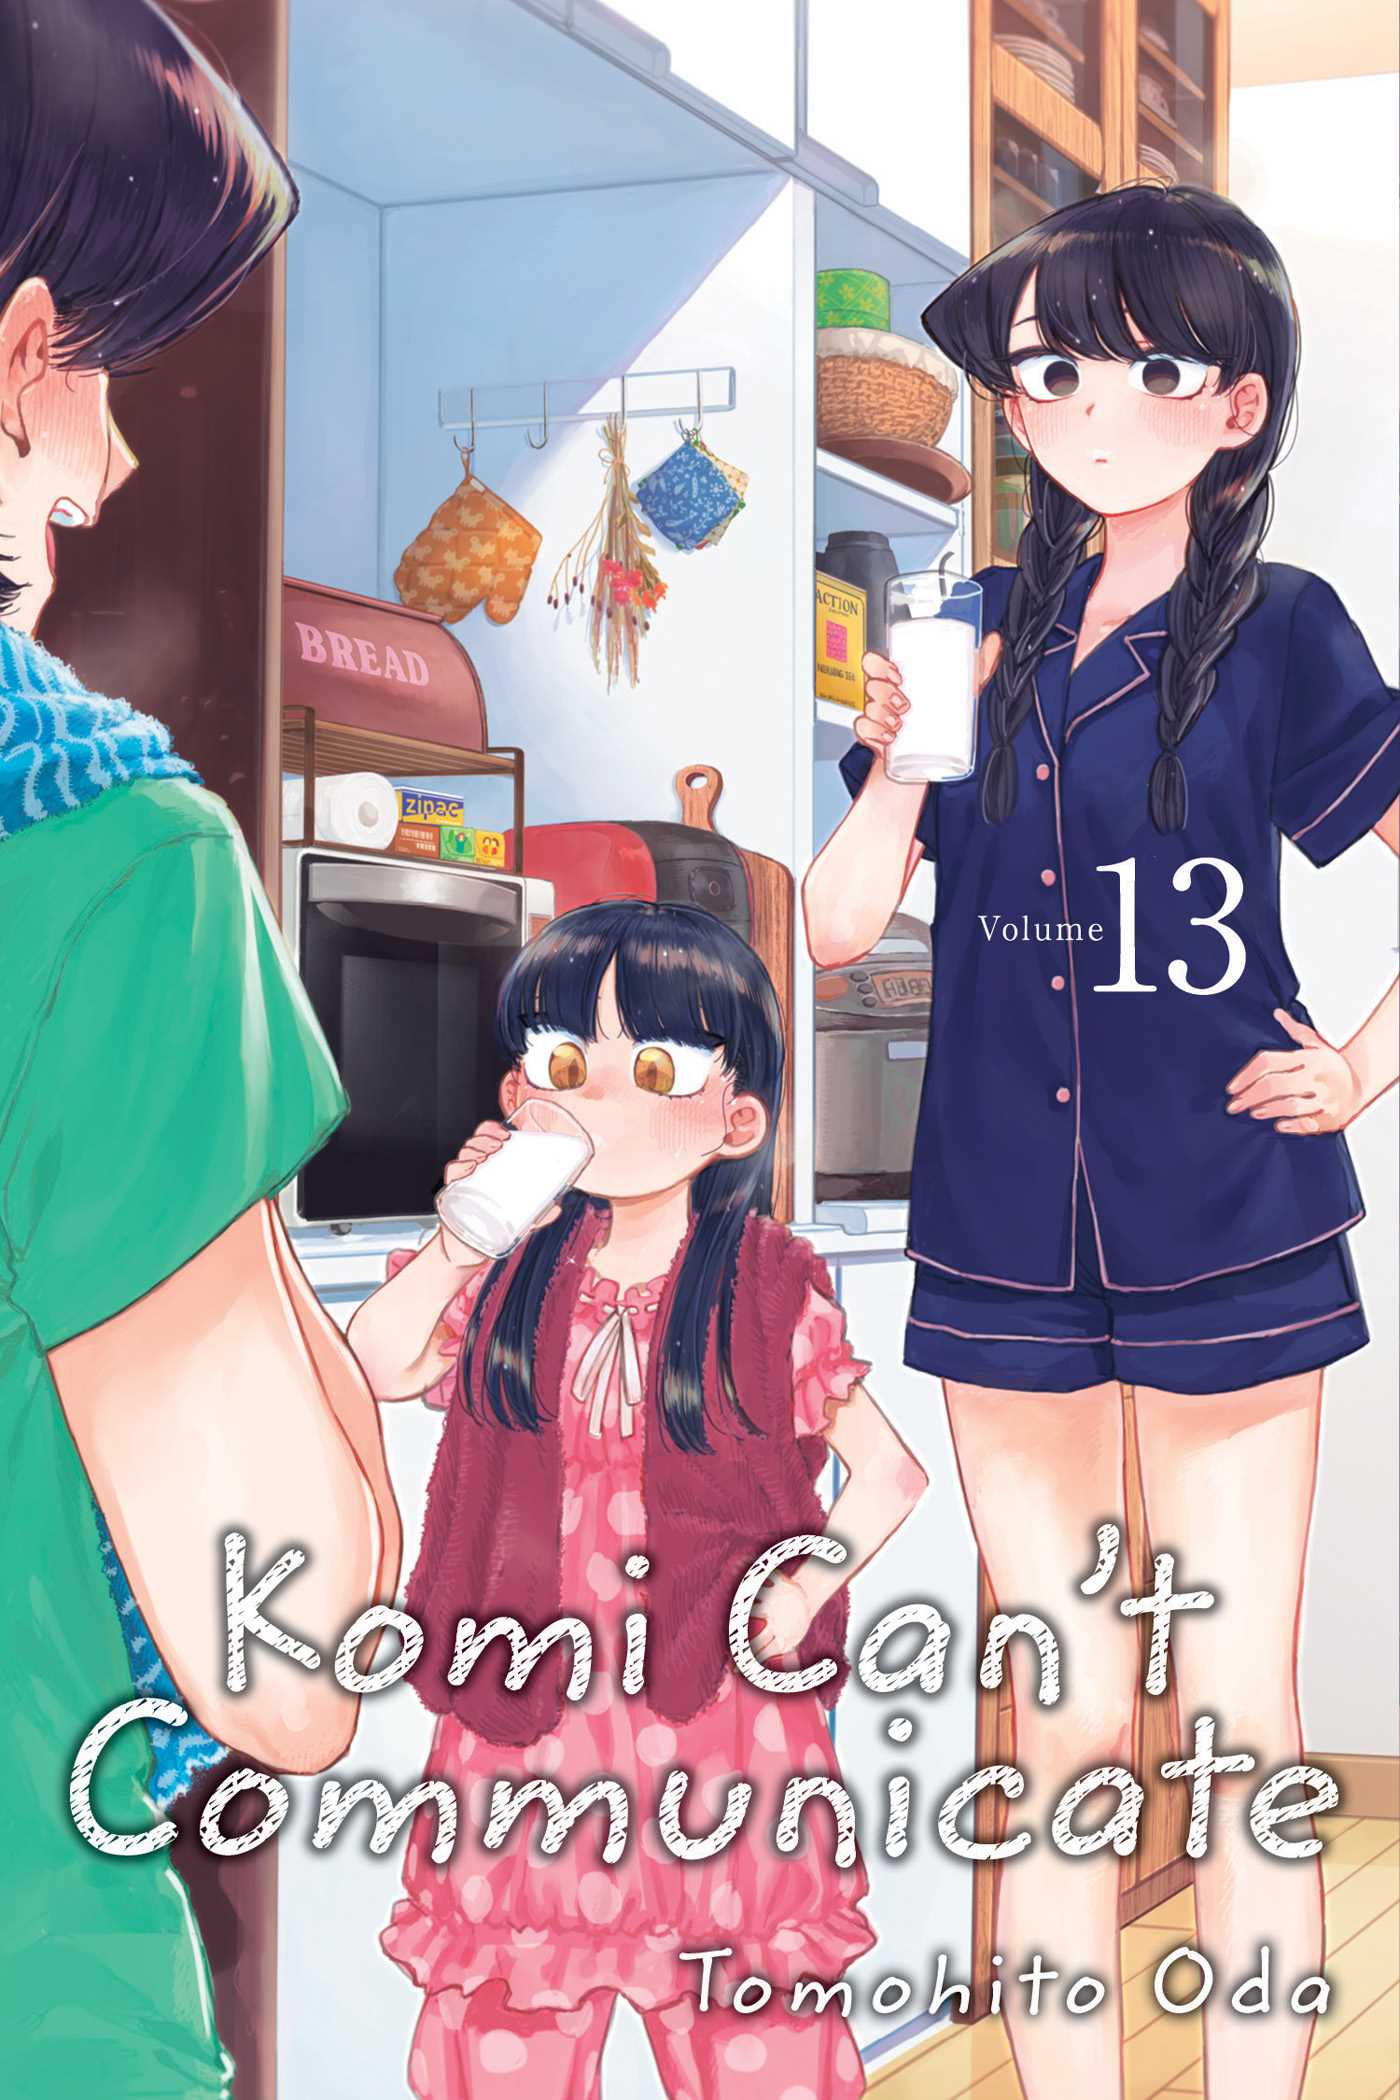 It won't take long: The second season of Komi San Can't